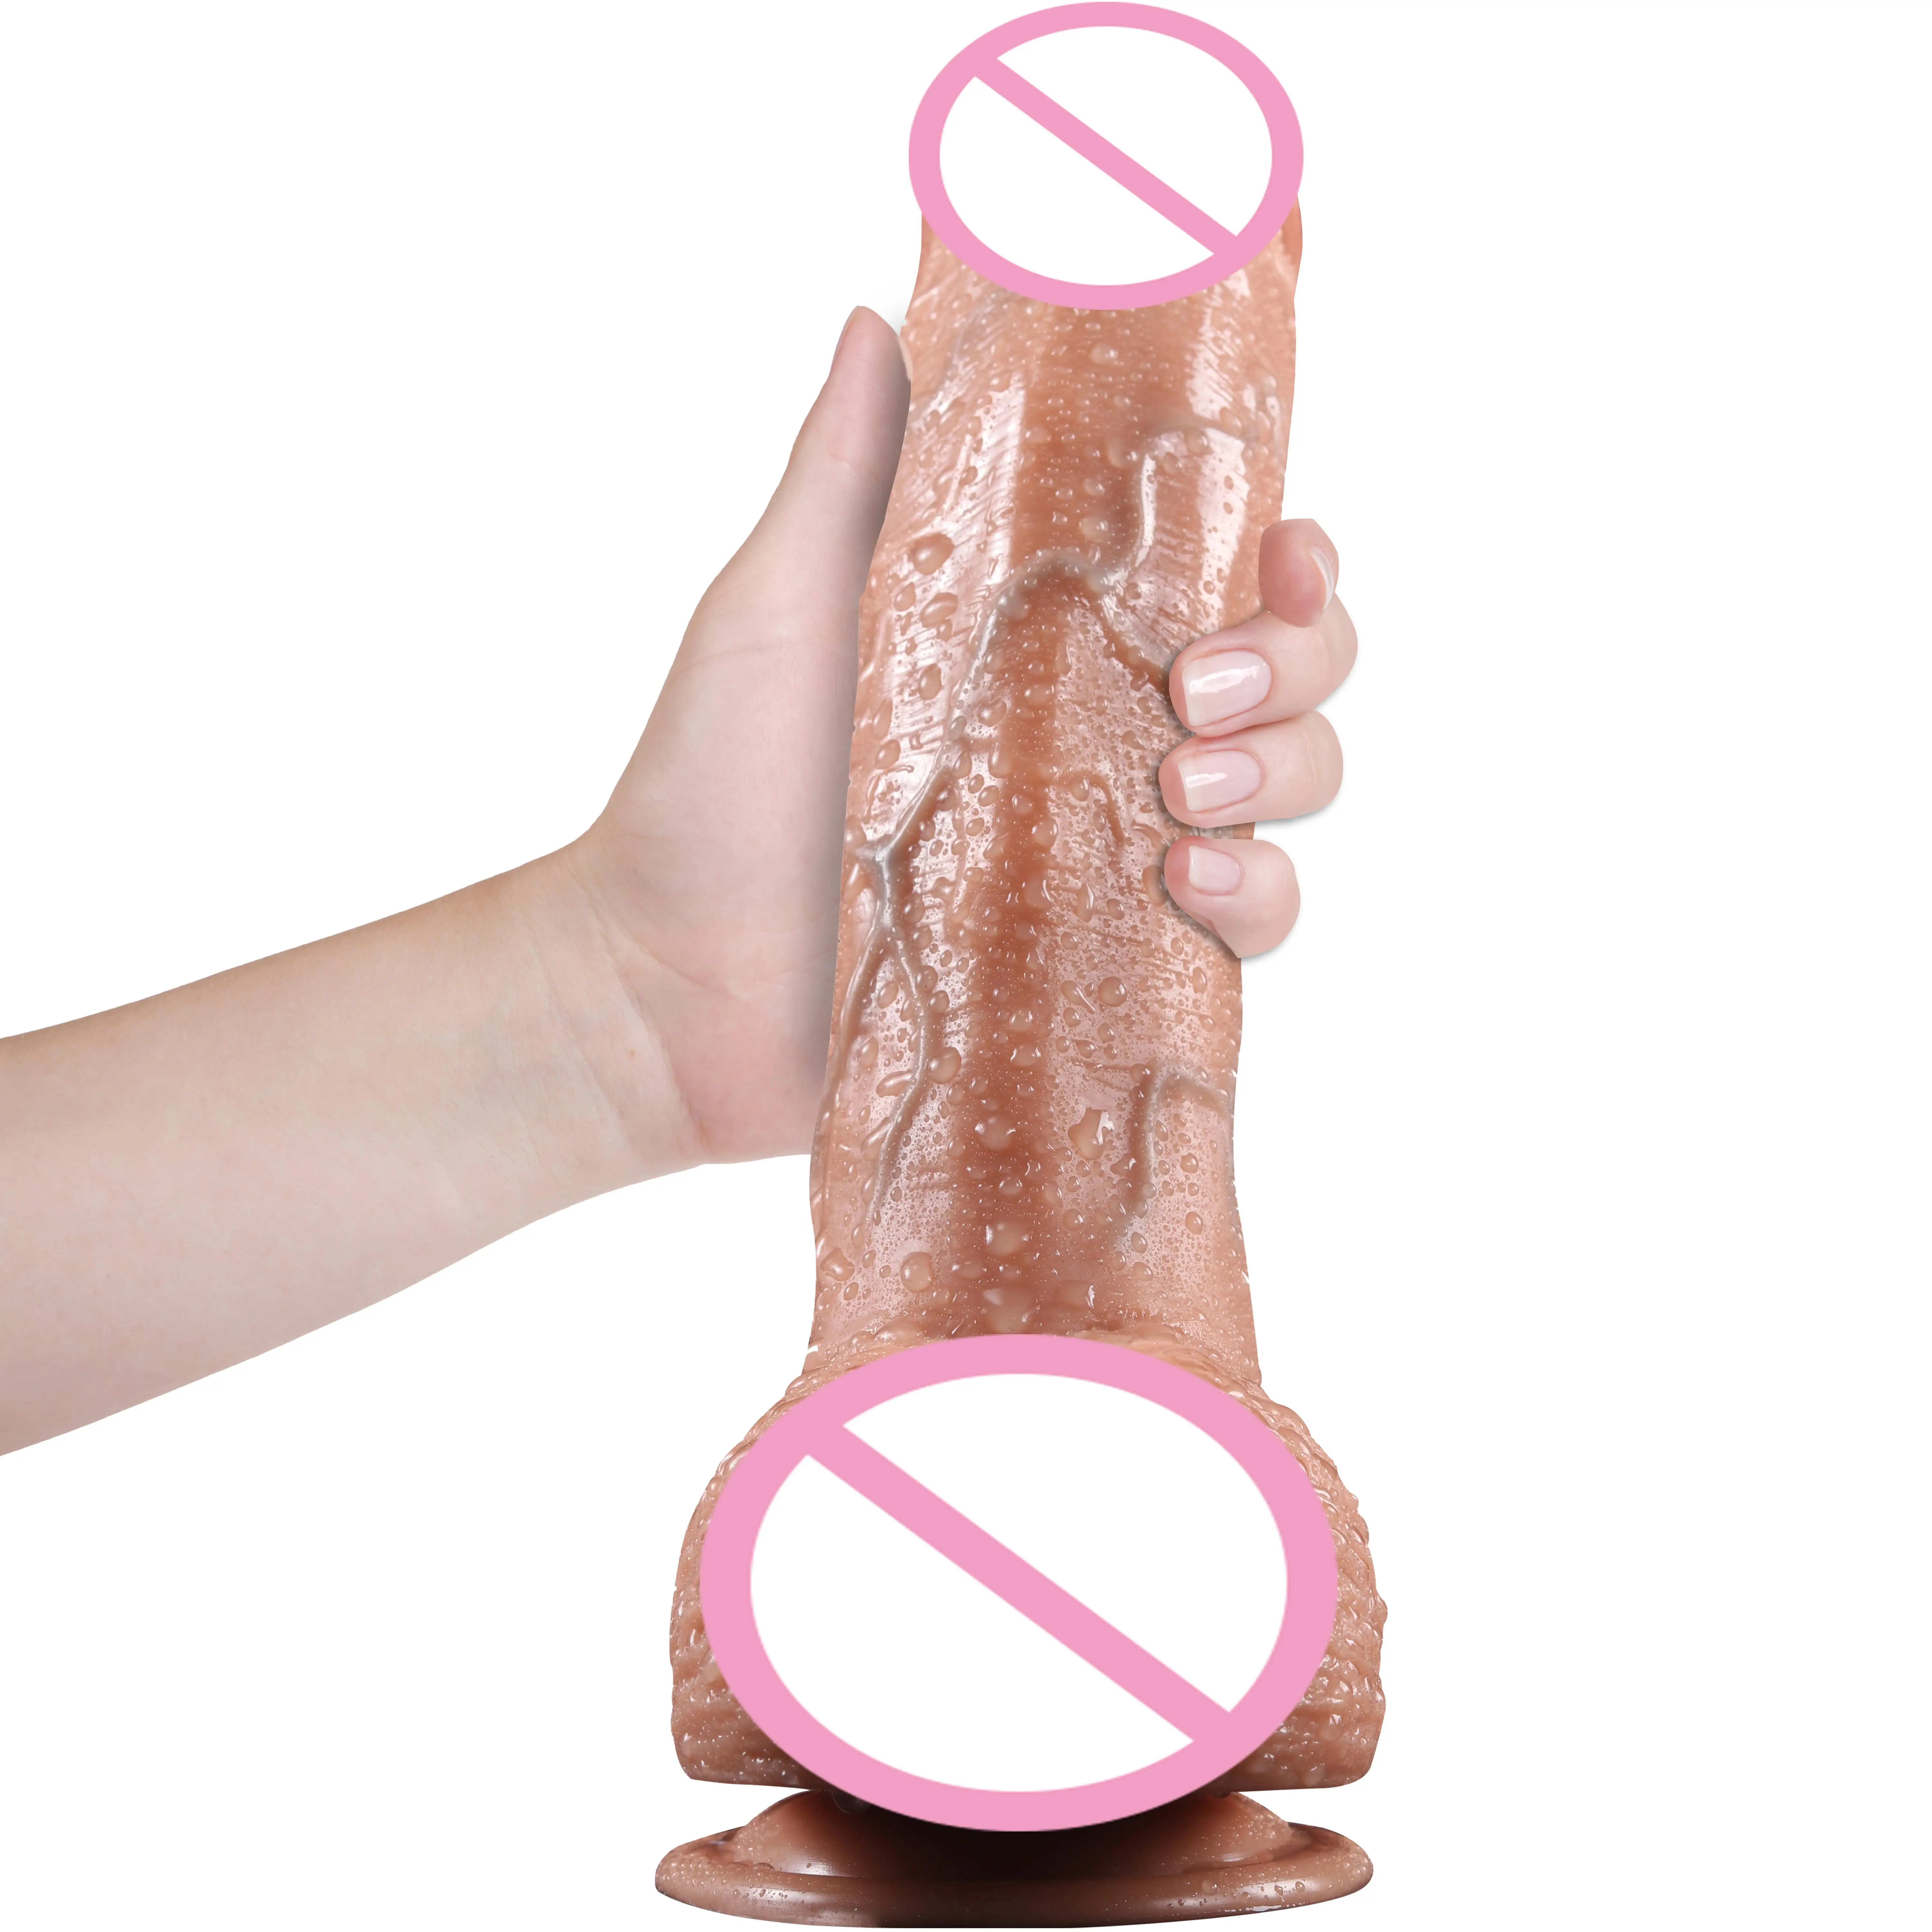 Dành cho người lớn 9 inch thực tế dày Grandes Silicone nhân tạo thực tế dương vật đồ chơi tình dục Dương vật giả cho phụ nữ phụ nữ thủ dâm Đồ chơi tình dục